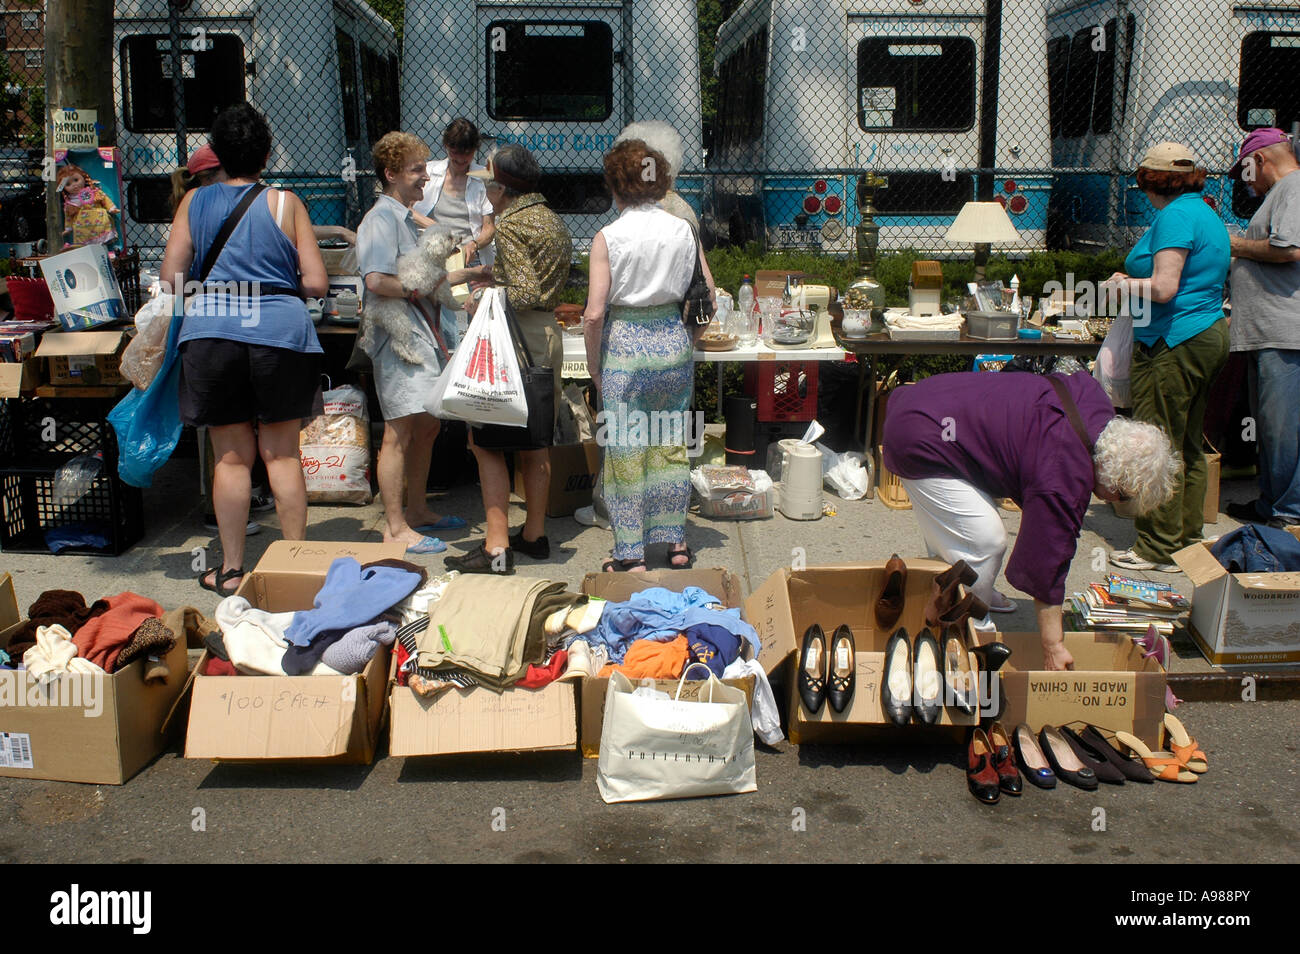 Giant flea market in the NYC neighborhood of Chelsea Stock Photo